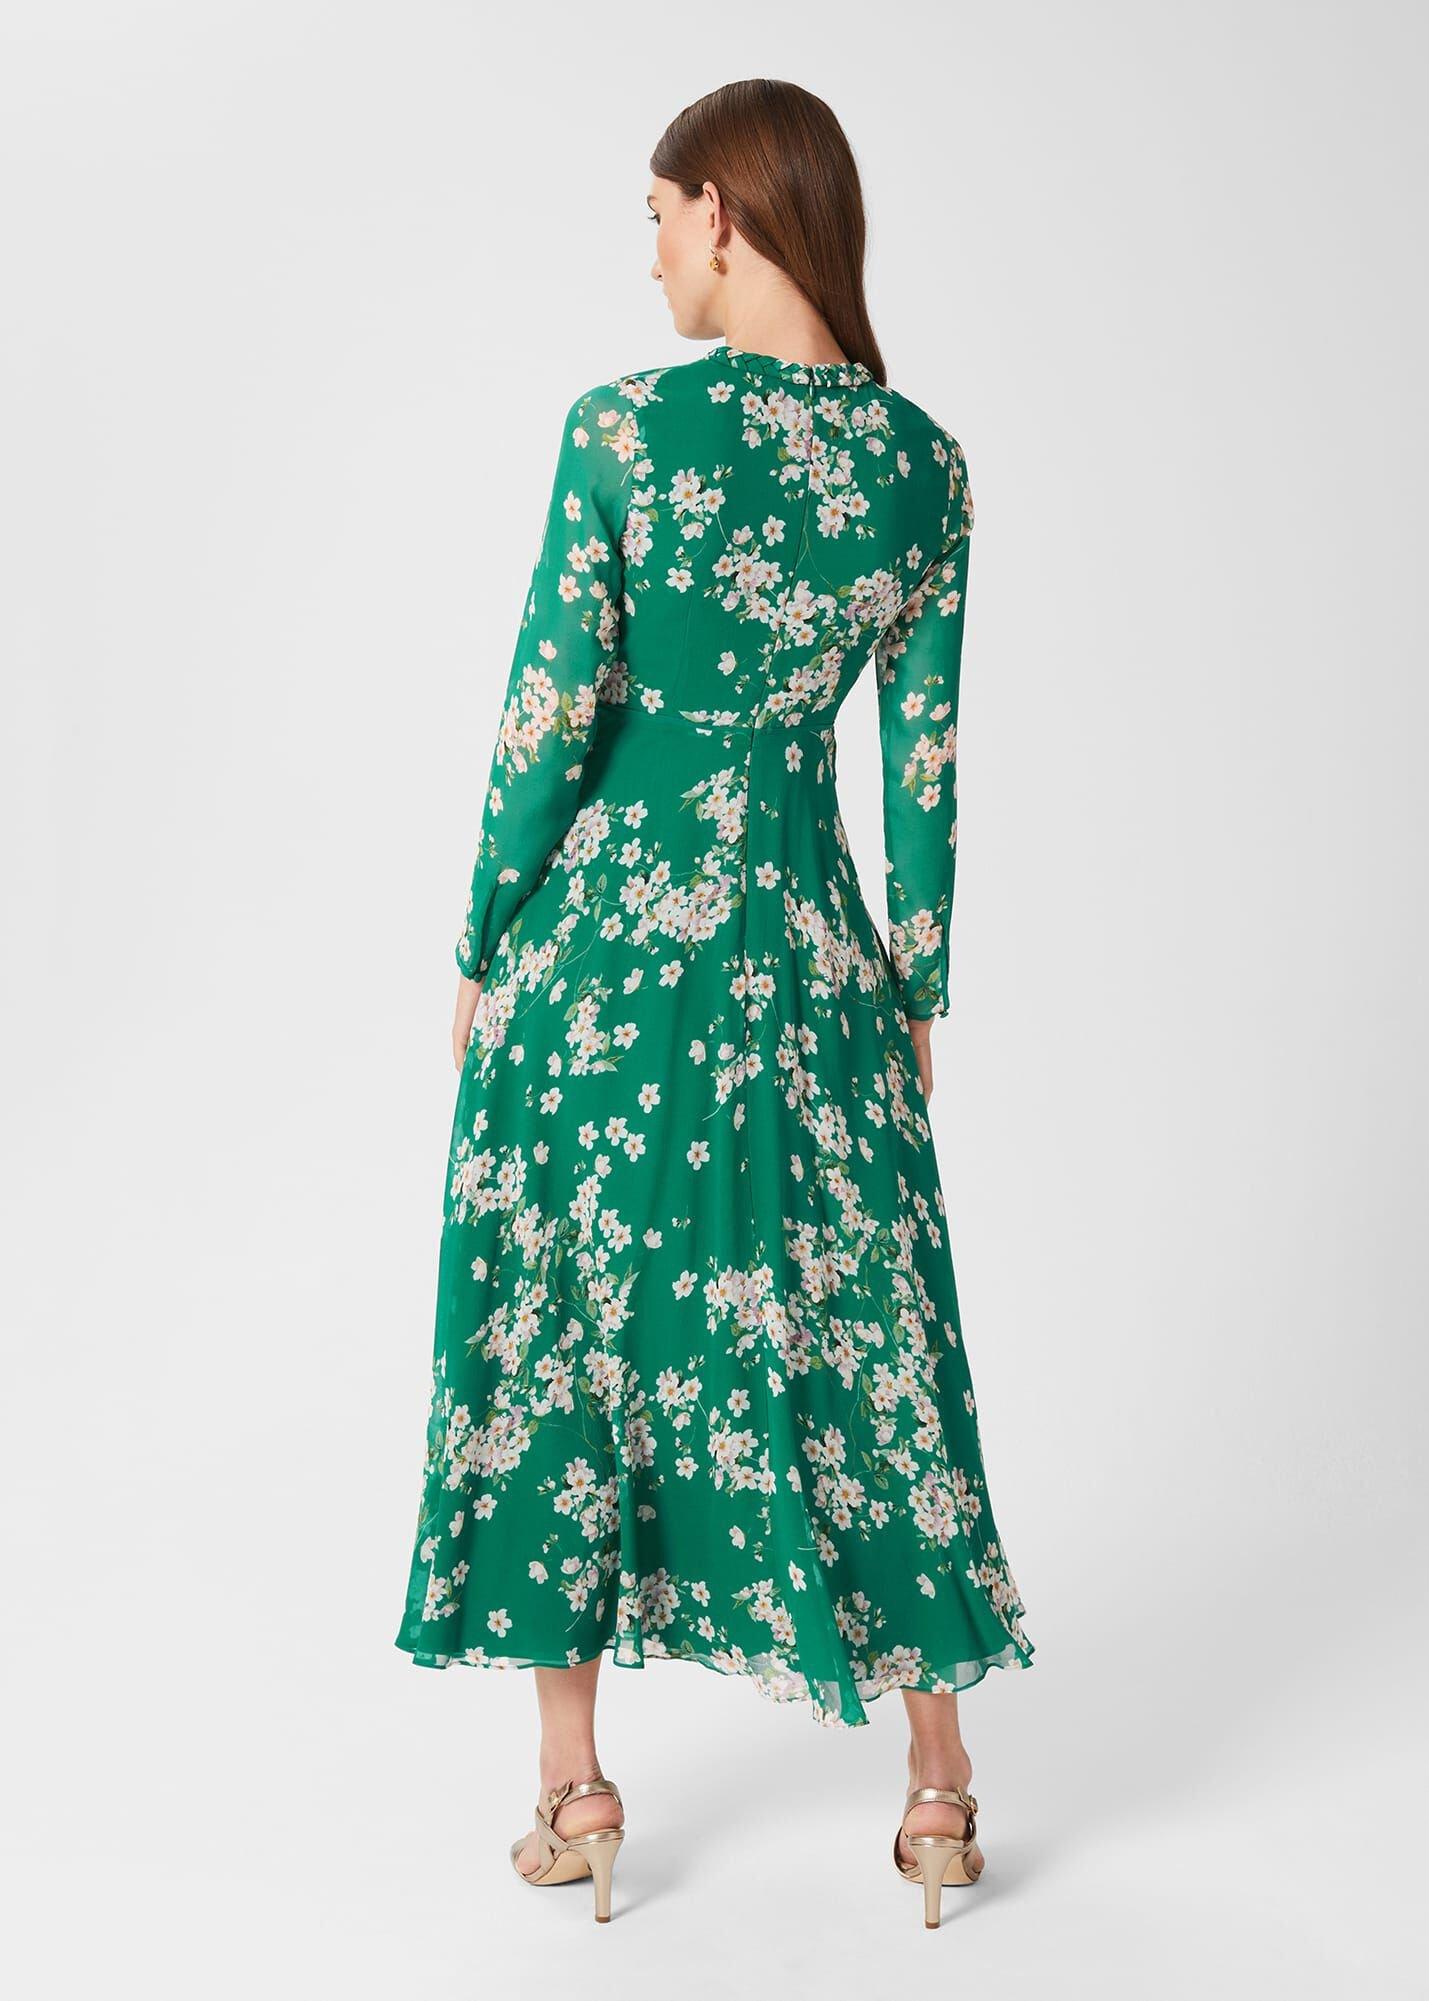 Linen Rosabella Dress. Linen Top . Floral Italian Linen Dress